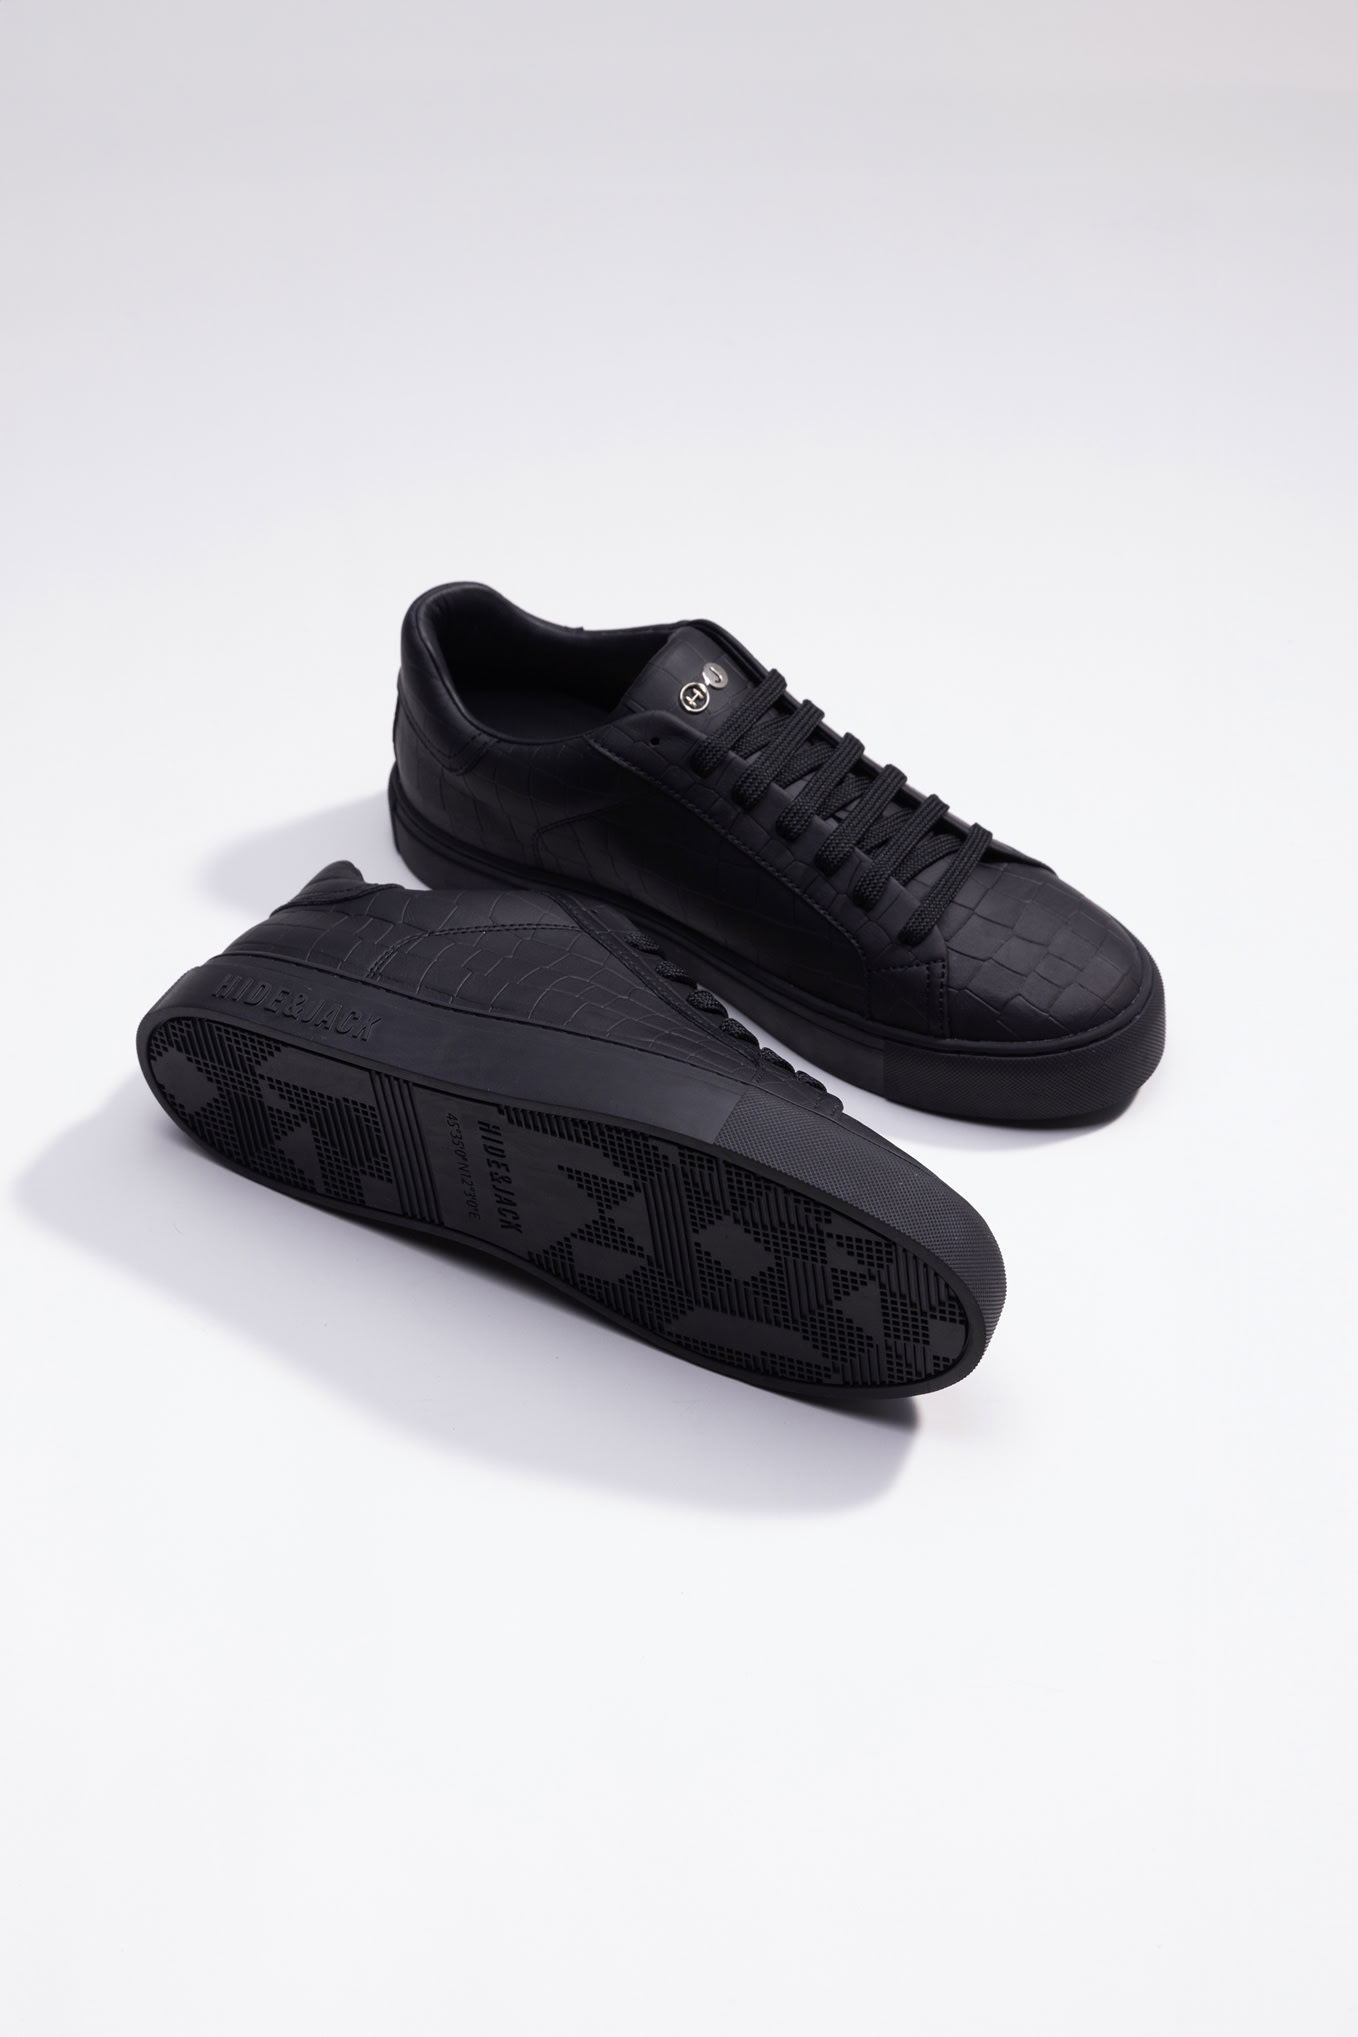 Hide&amp;jack Low Top Sneaker - Essence Black Black